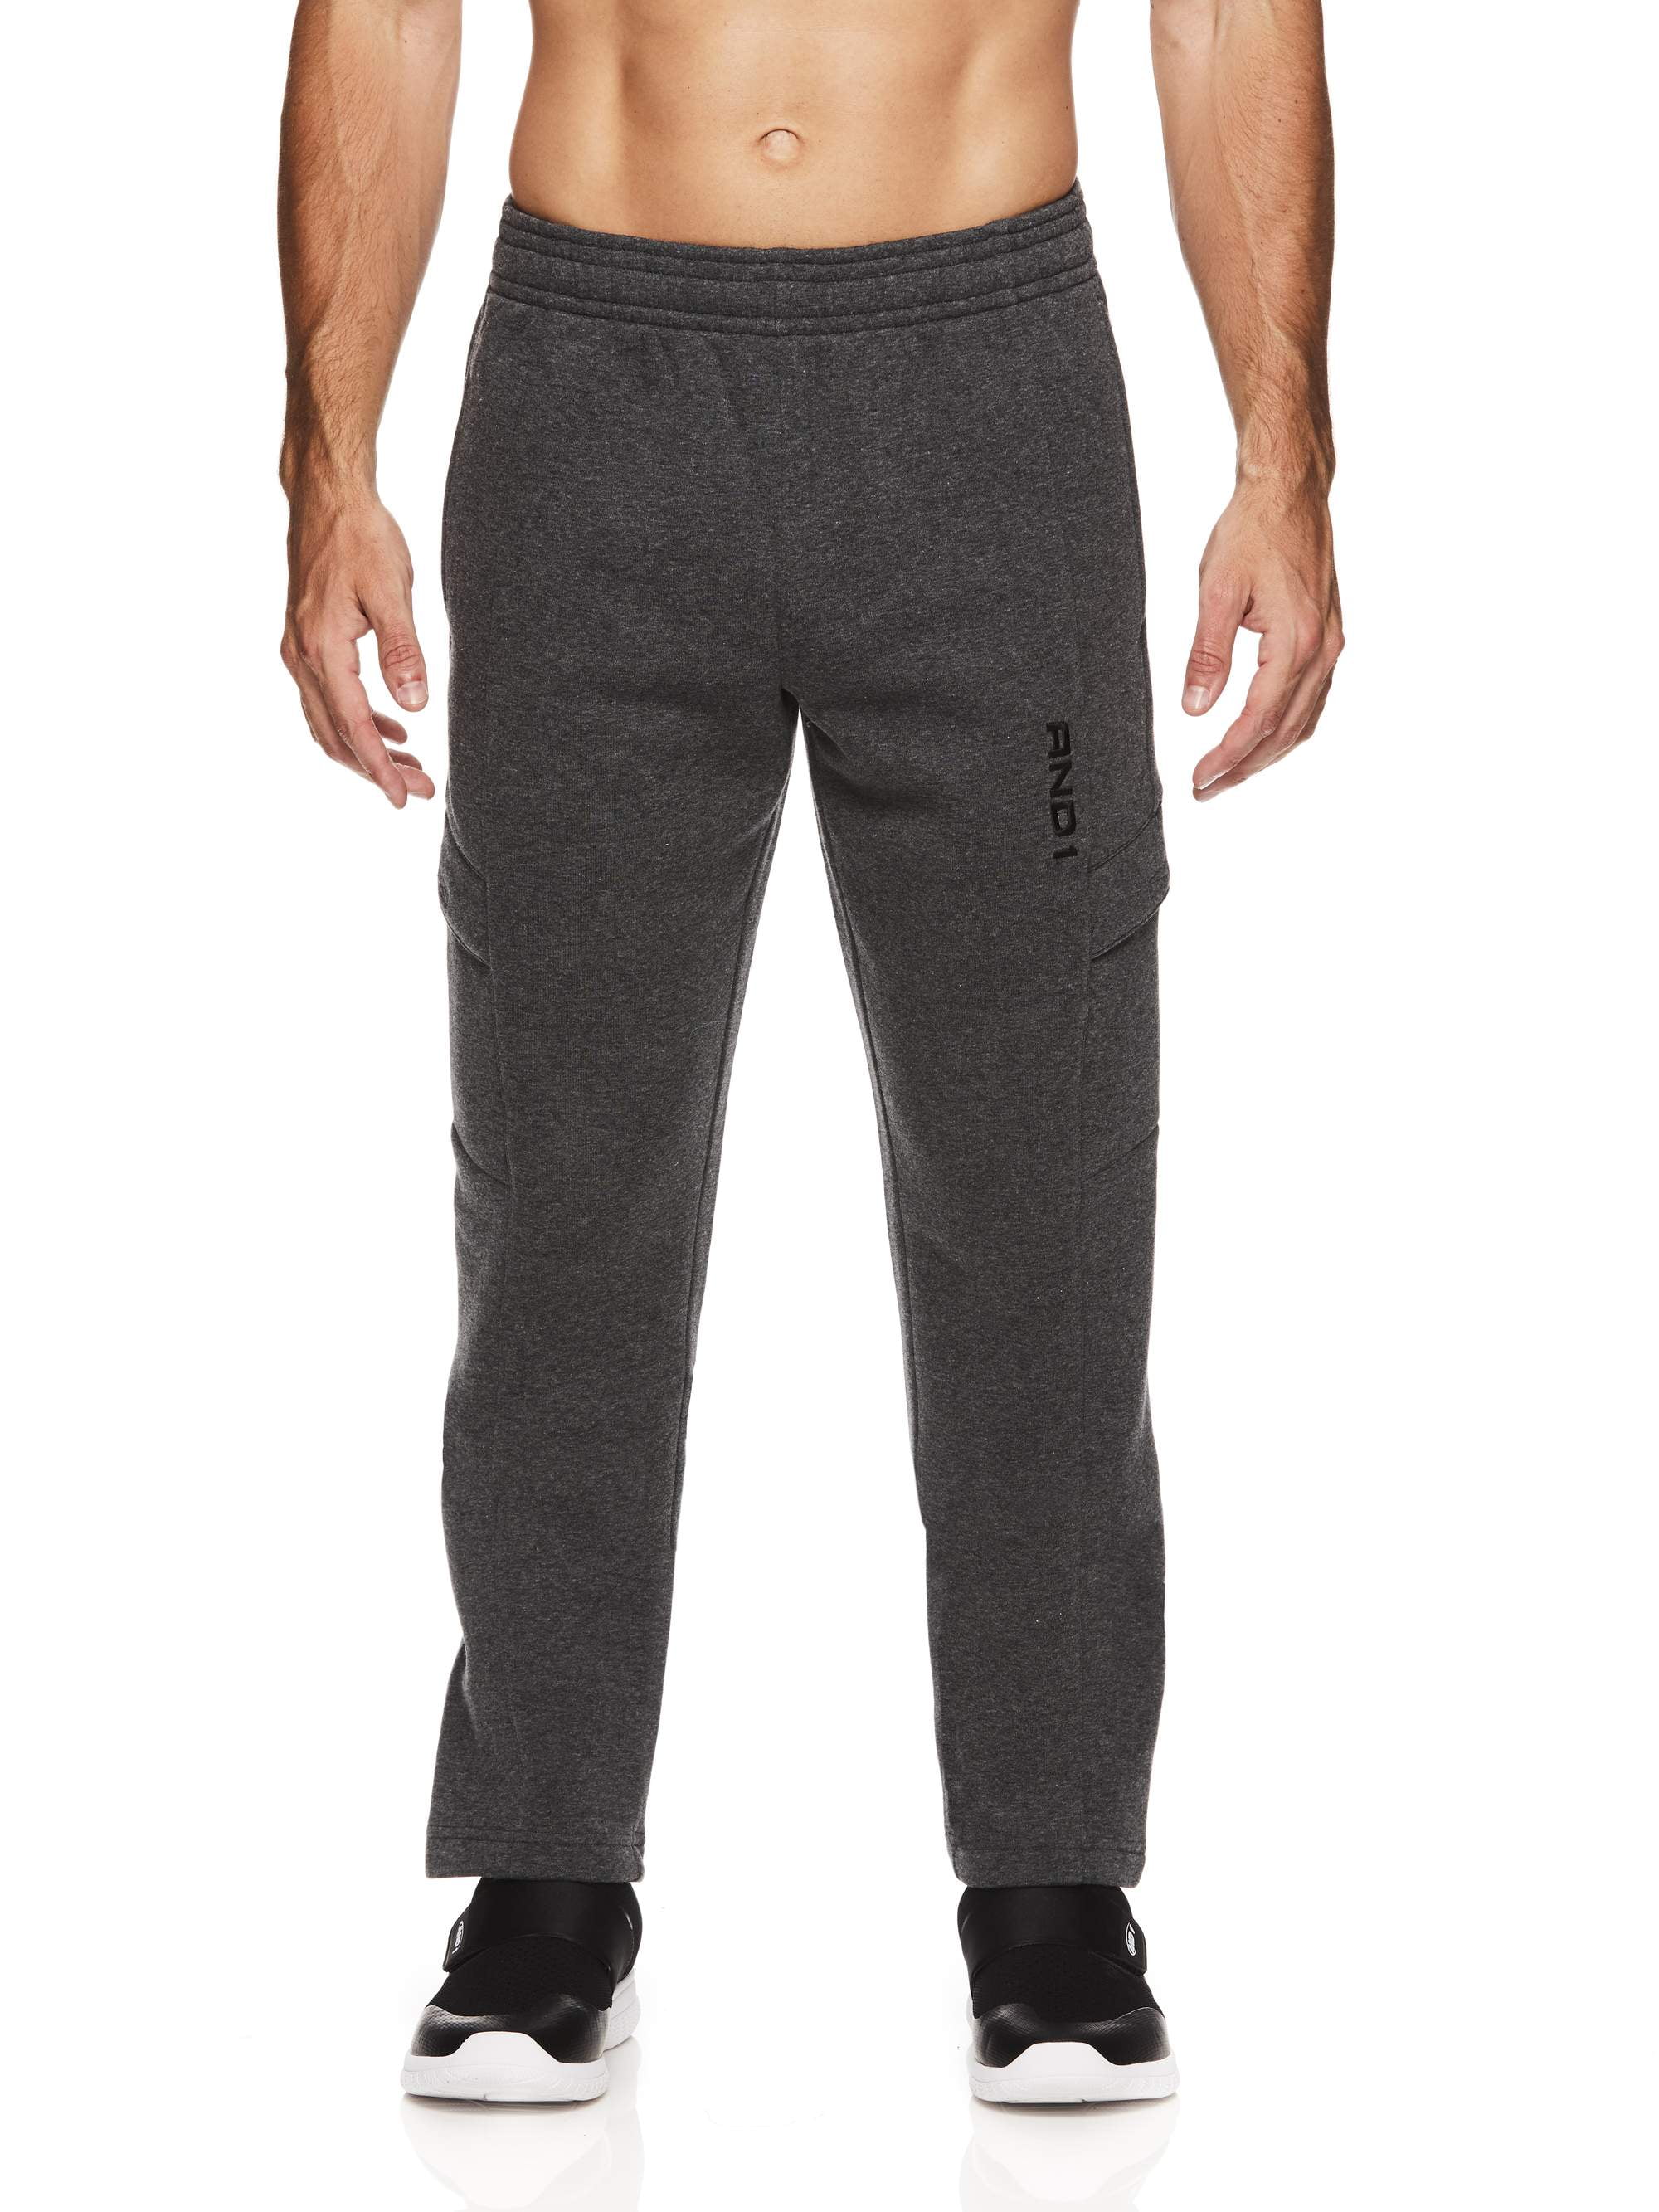 AND1 Men's Fleece Performance Cargo Pants - Walmart.com